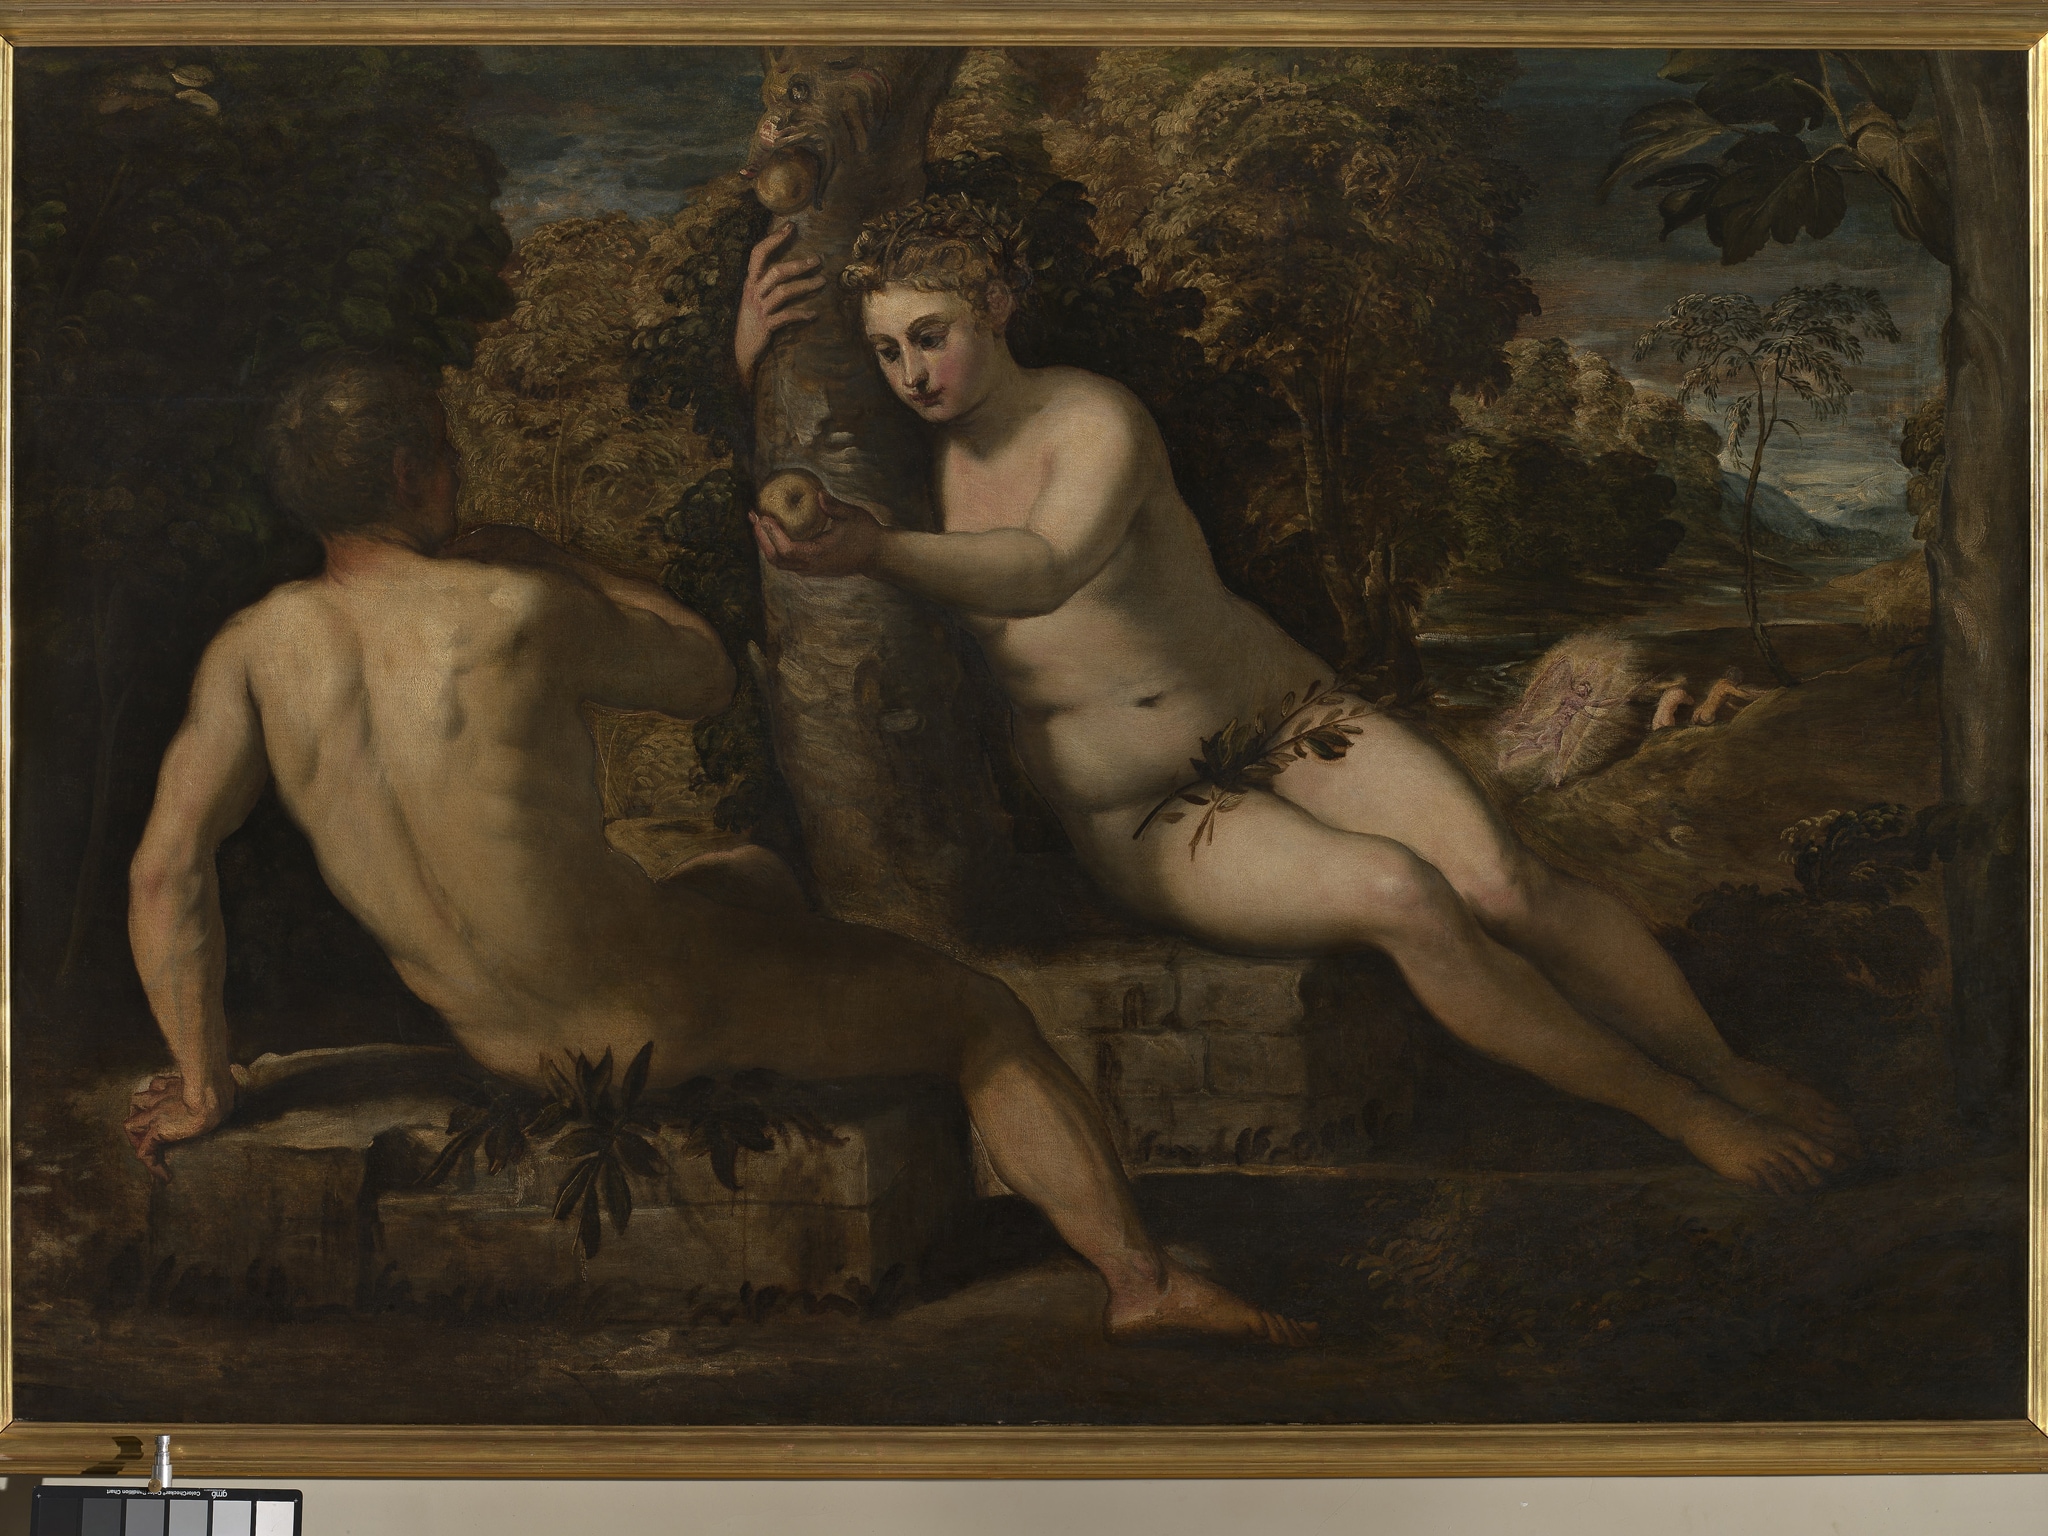 Tintoretto (Jacopo Robusti), Adamo ed Eva, 1550-1553 ca. - Tela, cm 150 x 220 - Provenienza: acquisizione del 1812, dalla Scuola della Santissima Trinità di Venezia- Sala XXIII